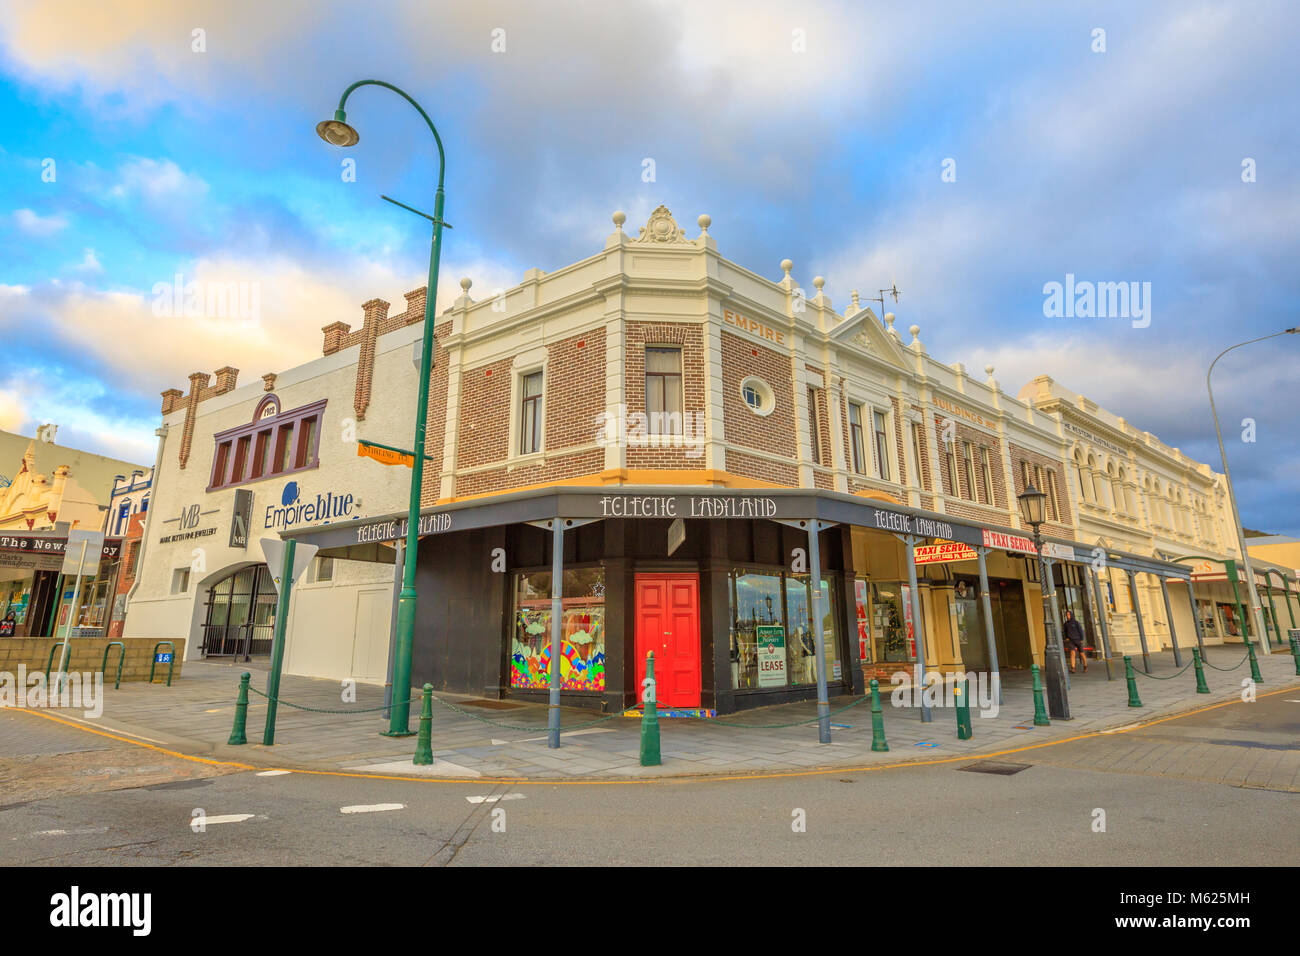 Albany, Australien - Dec 28, 2017: Empire Gebäude mit Mark Blyth Fine Jewelry Store und Butterscotch Ecke der York Street und Stirling Terrasse Stockfoto